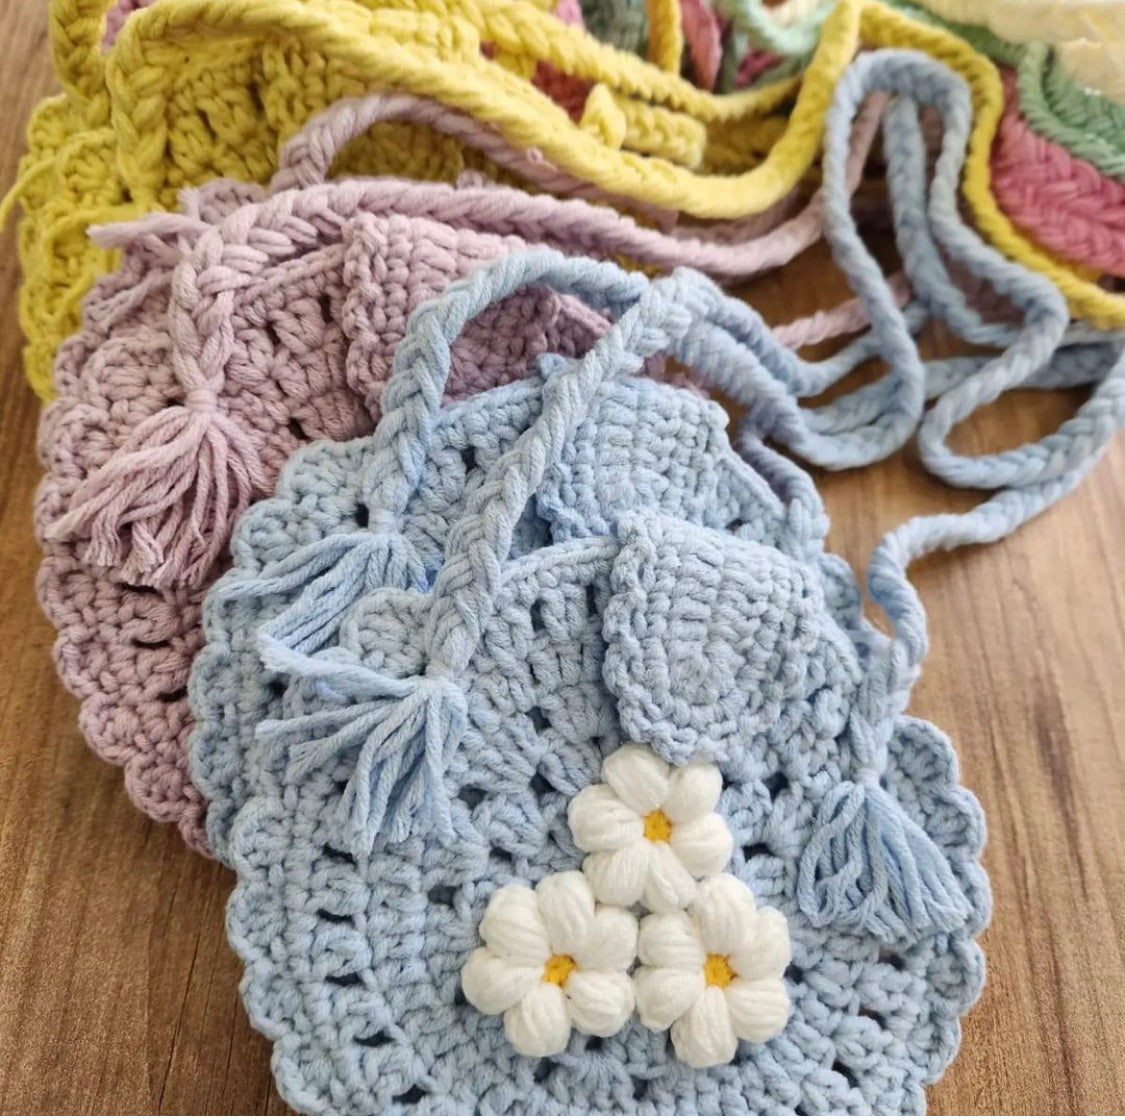 Handmade Girl’s Crochet Bag